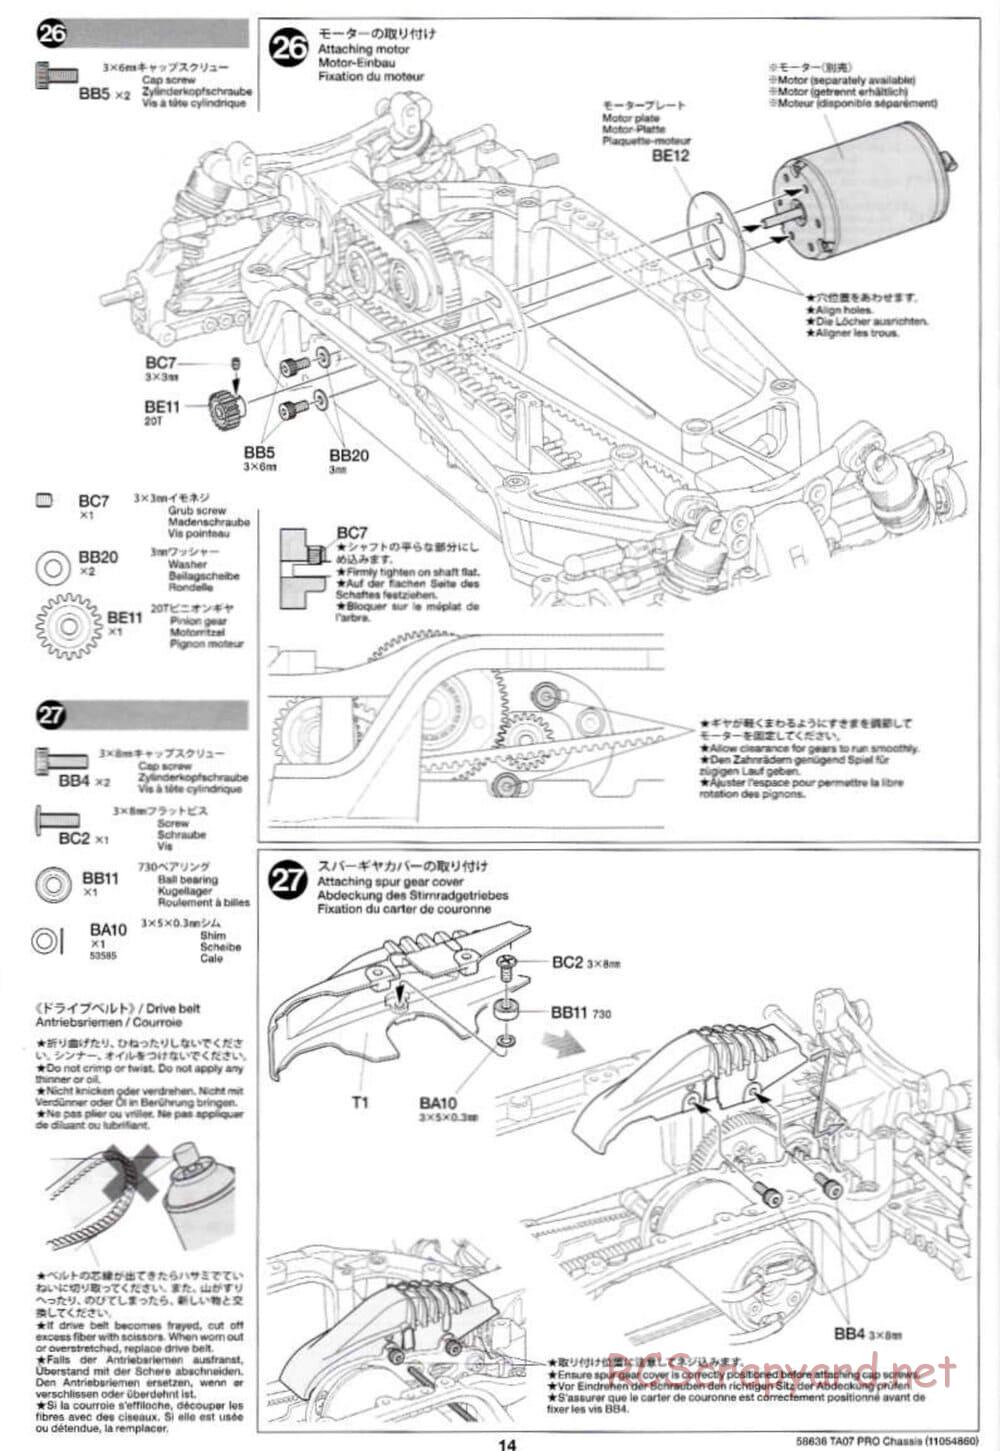 Tamiya - TA07 Pro Chassis - Manual - Page 14